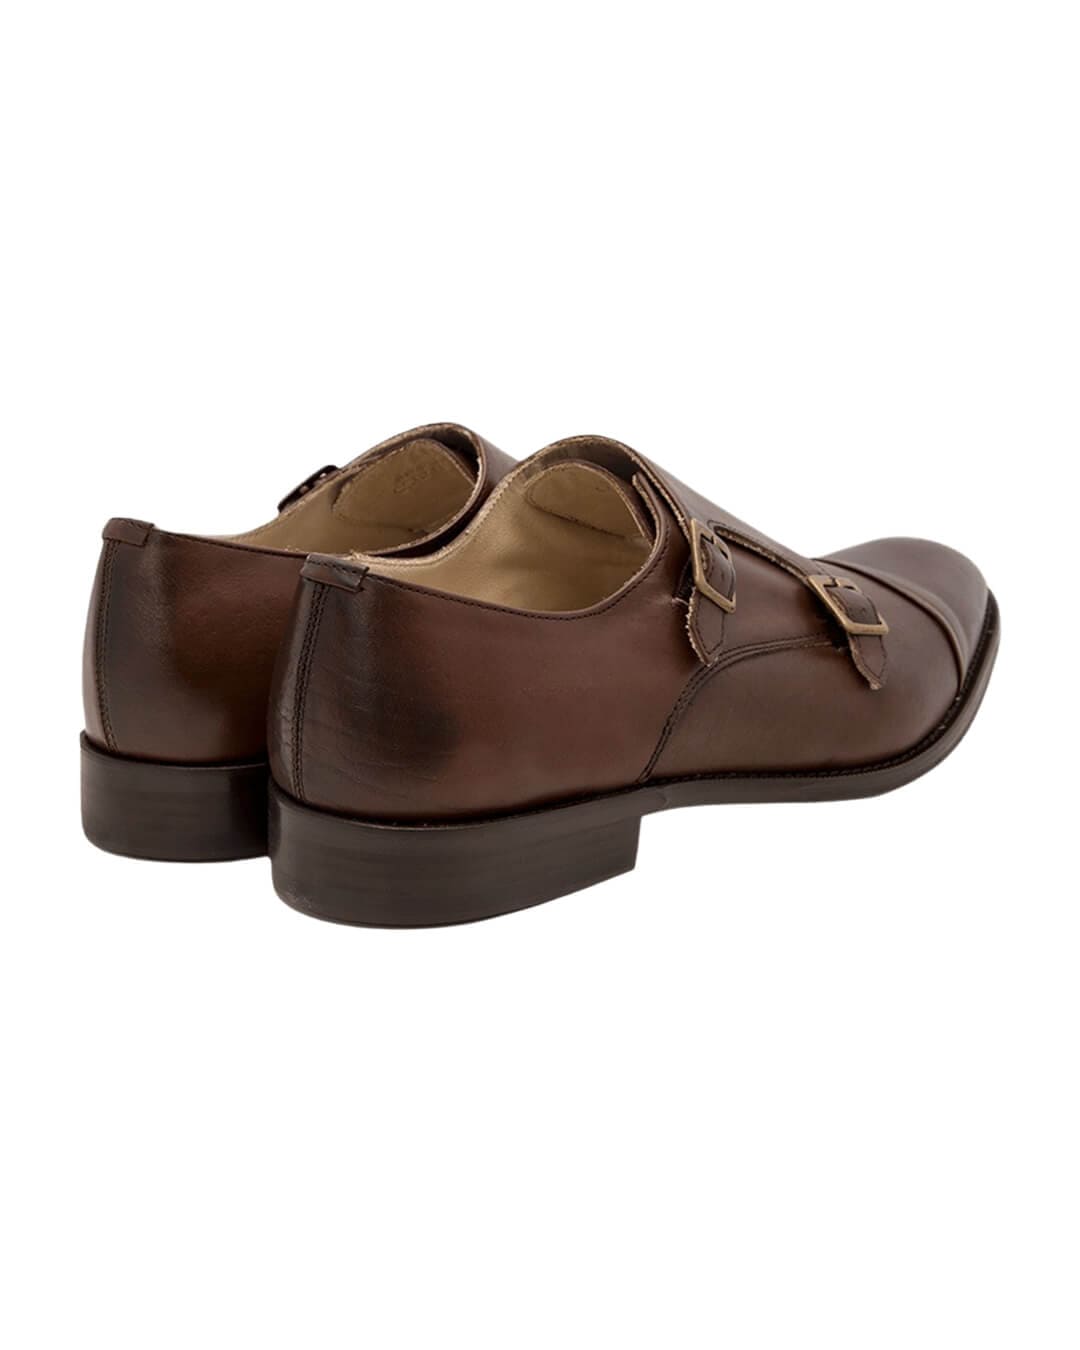 Gagliardi Shoes Gagliardi Brown Double Monk